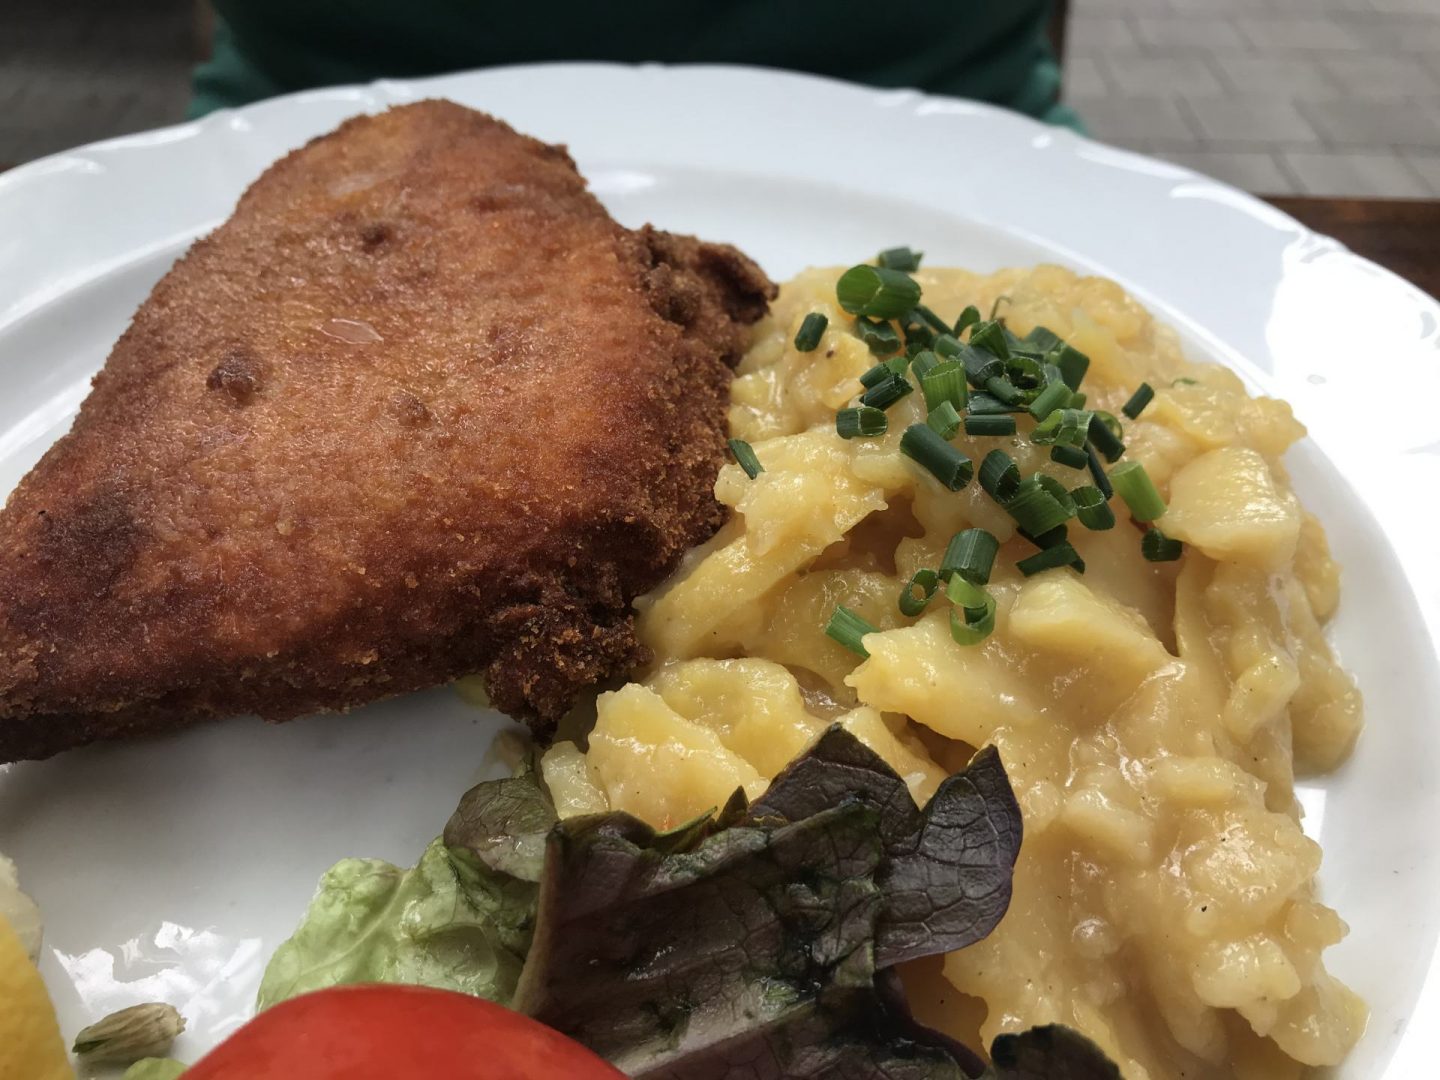 Erfahrung Bewertung Kritik Brauerei Gasthof Kraus Hirschaid Cordon Bleu Kartoffelsalat Foodblog Sternestulle